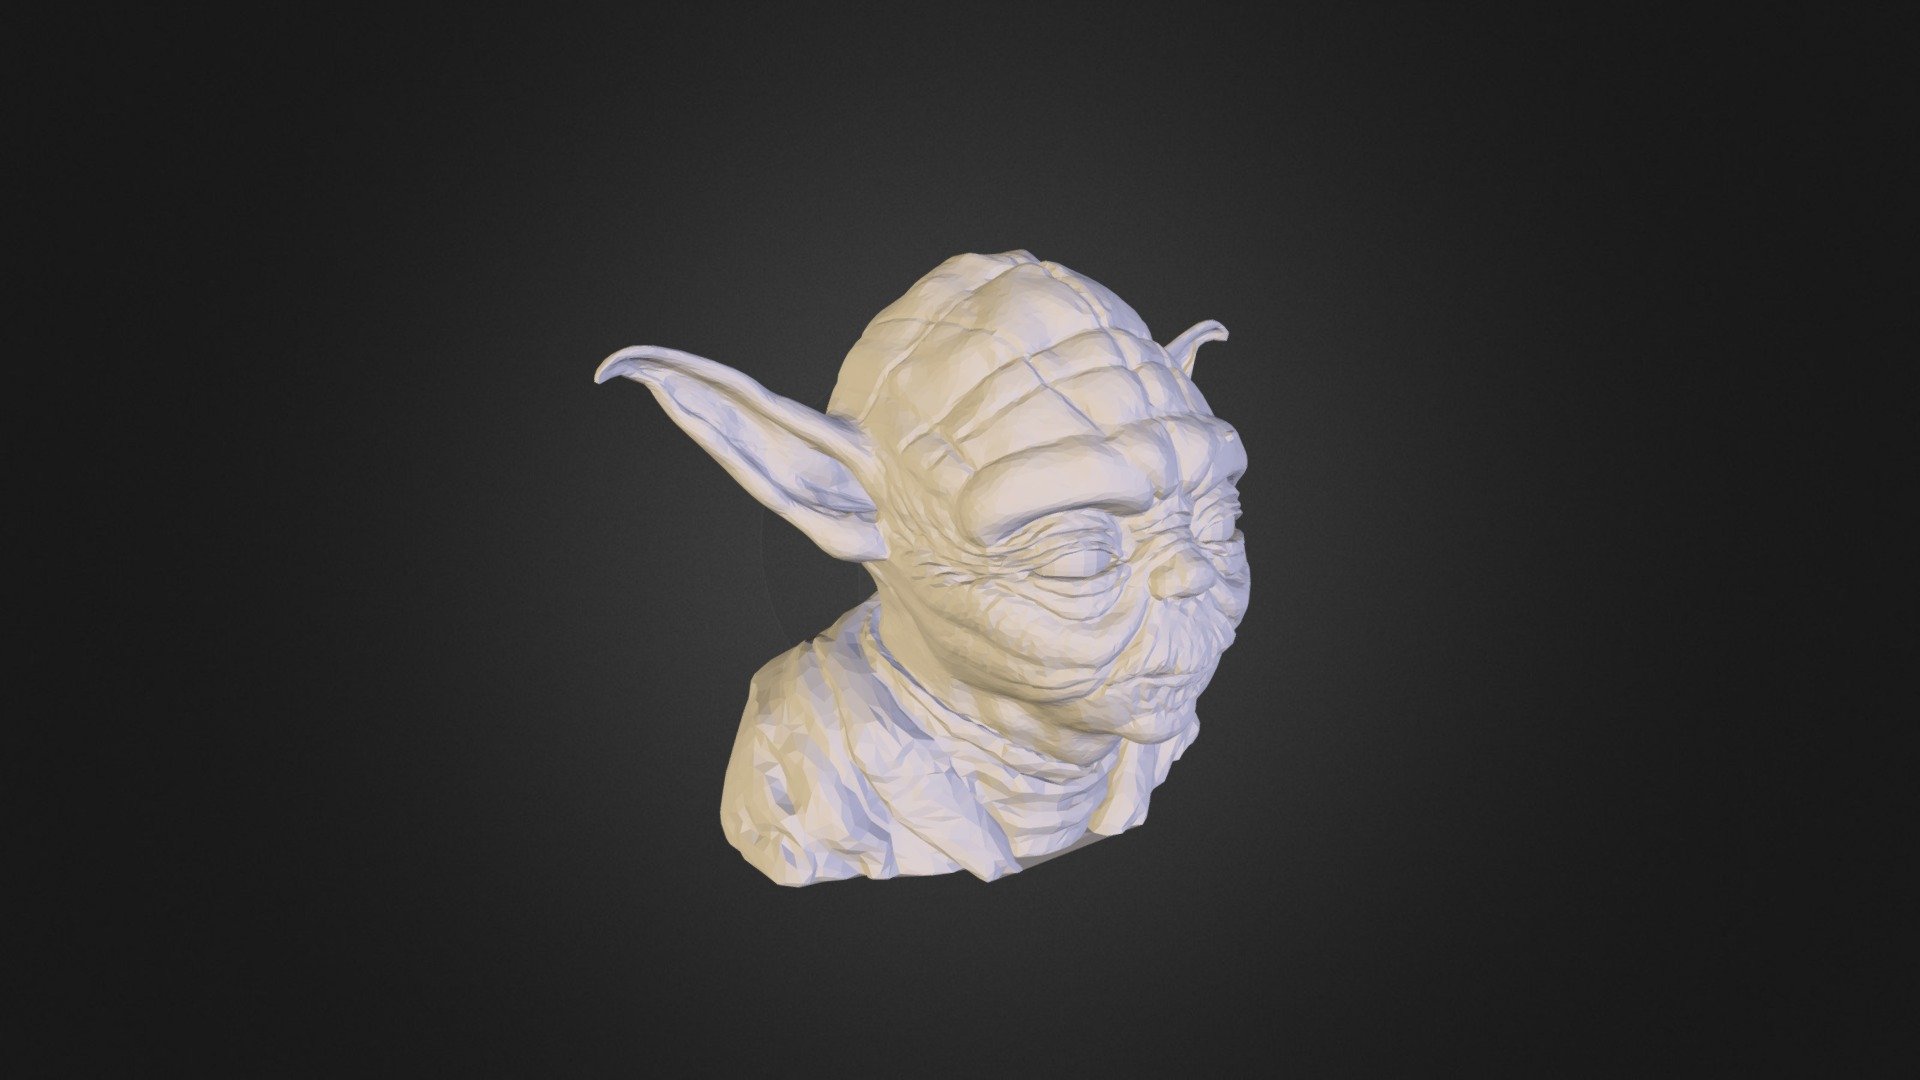 Yoda - 3D model by 3dmineisreal [925666b] - Sketchfab